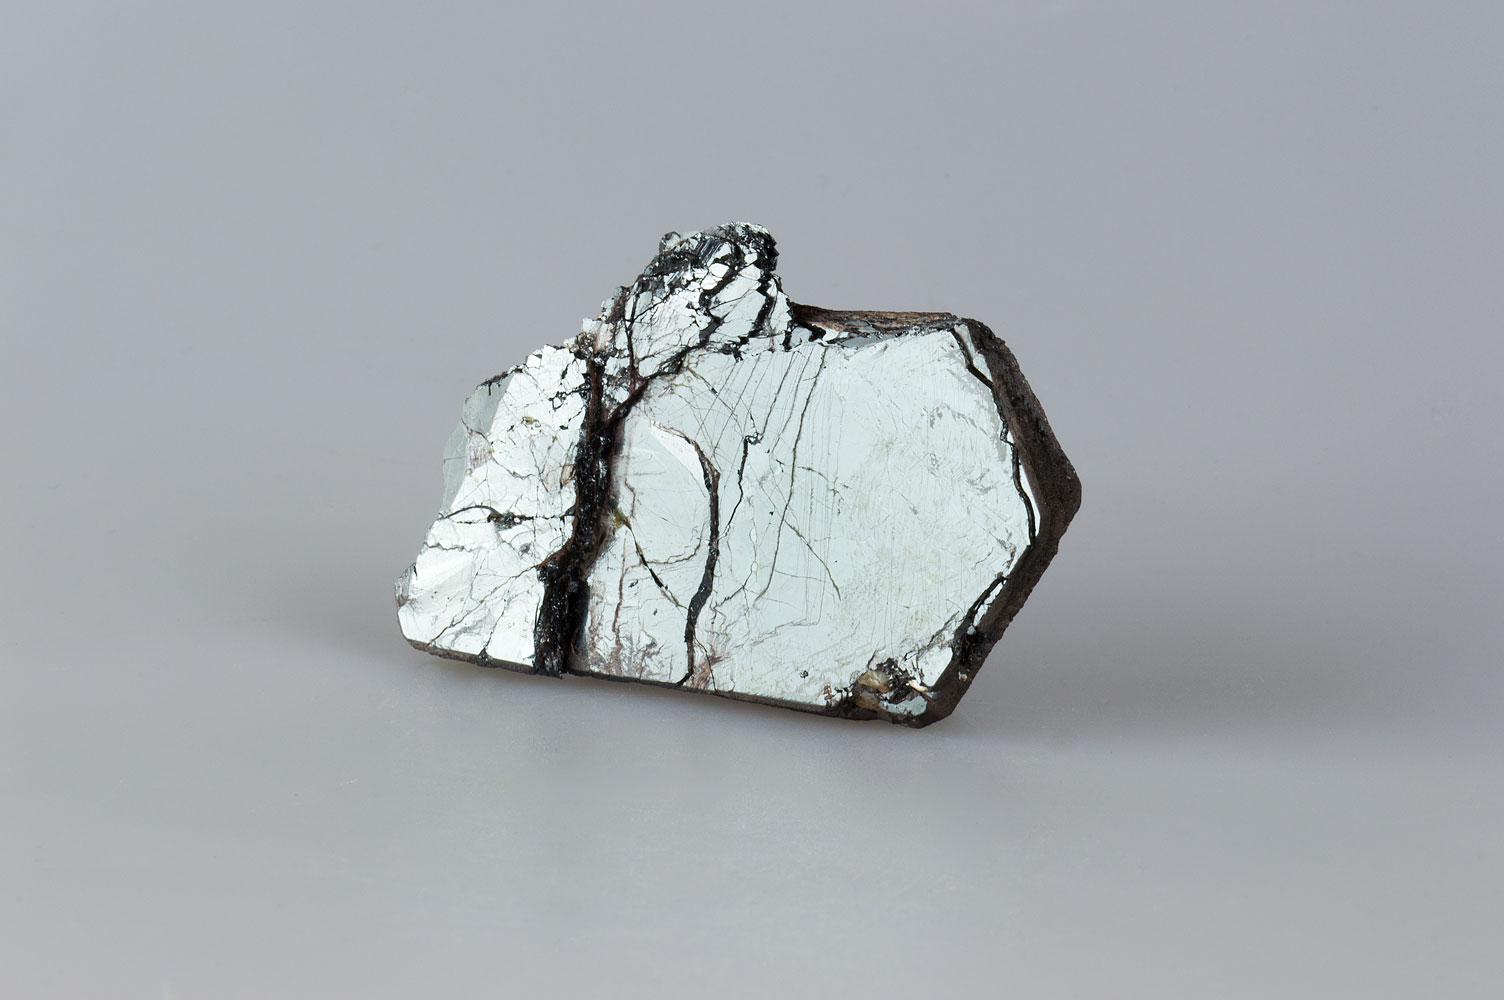 Iron Oxide Hematite type - Fe2O3